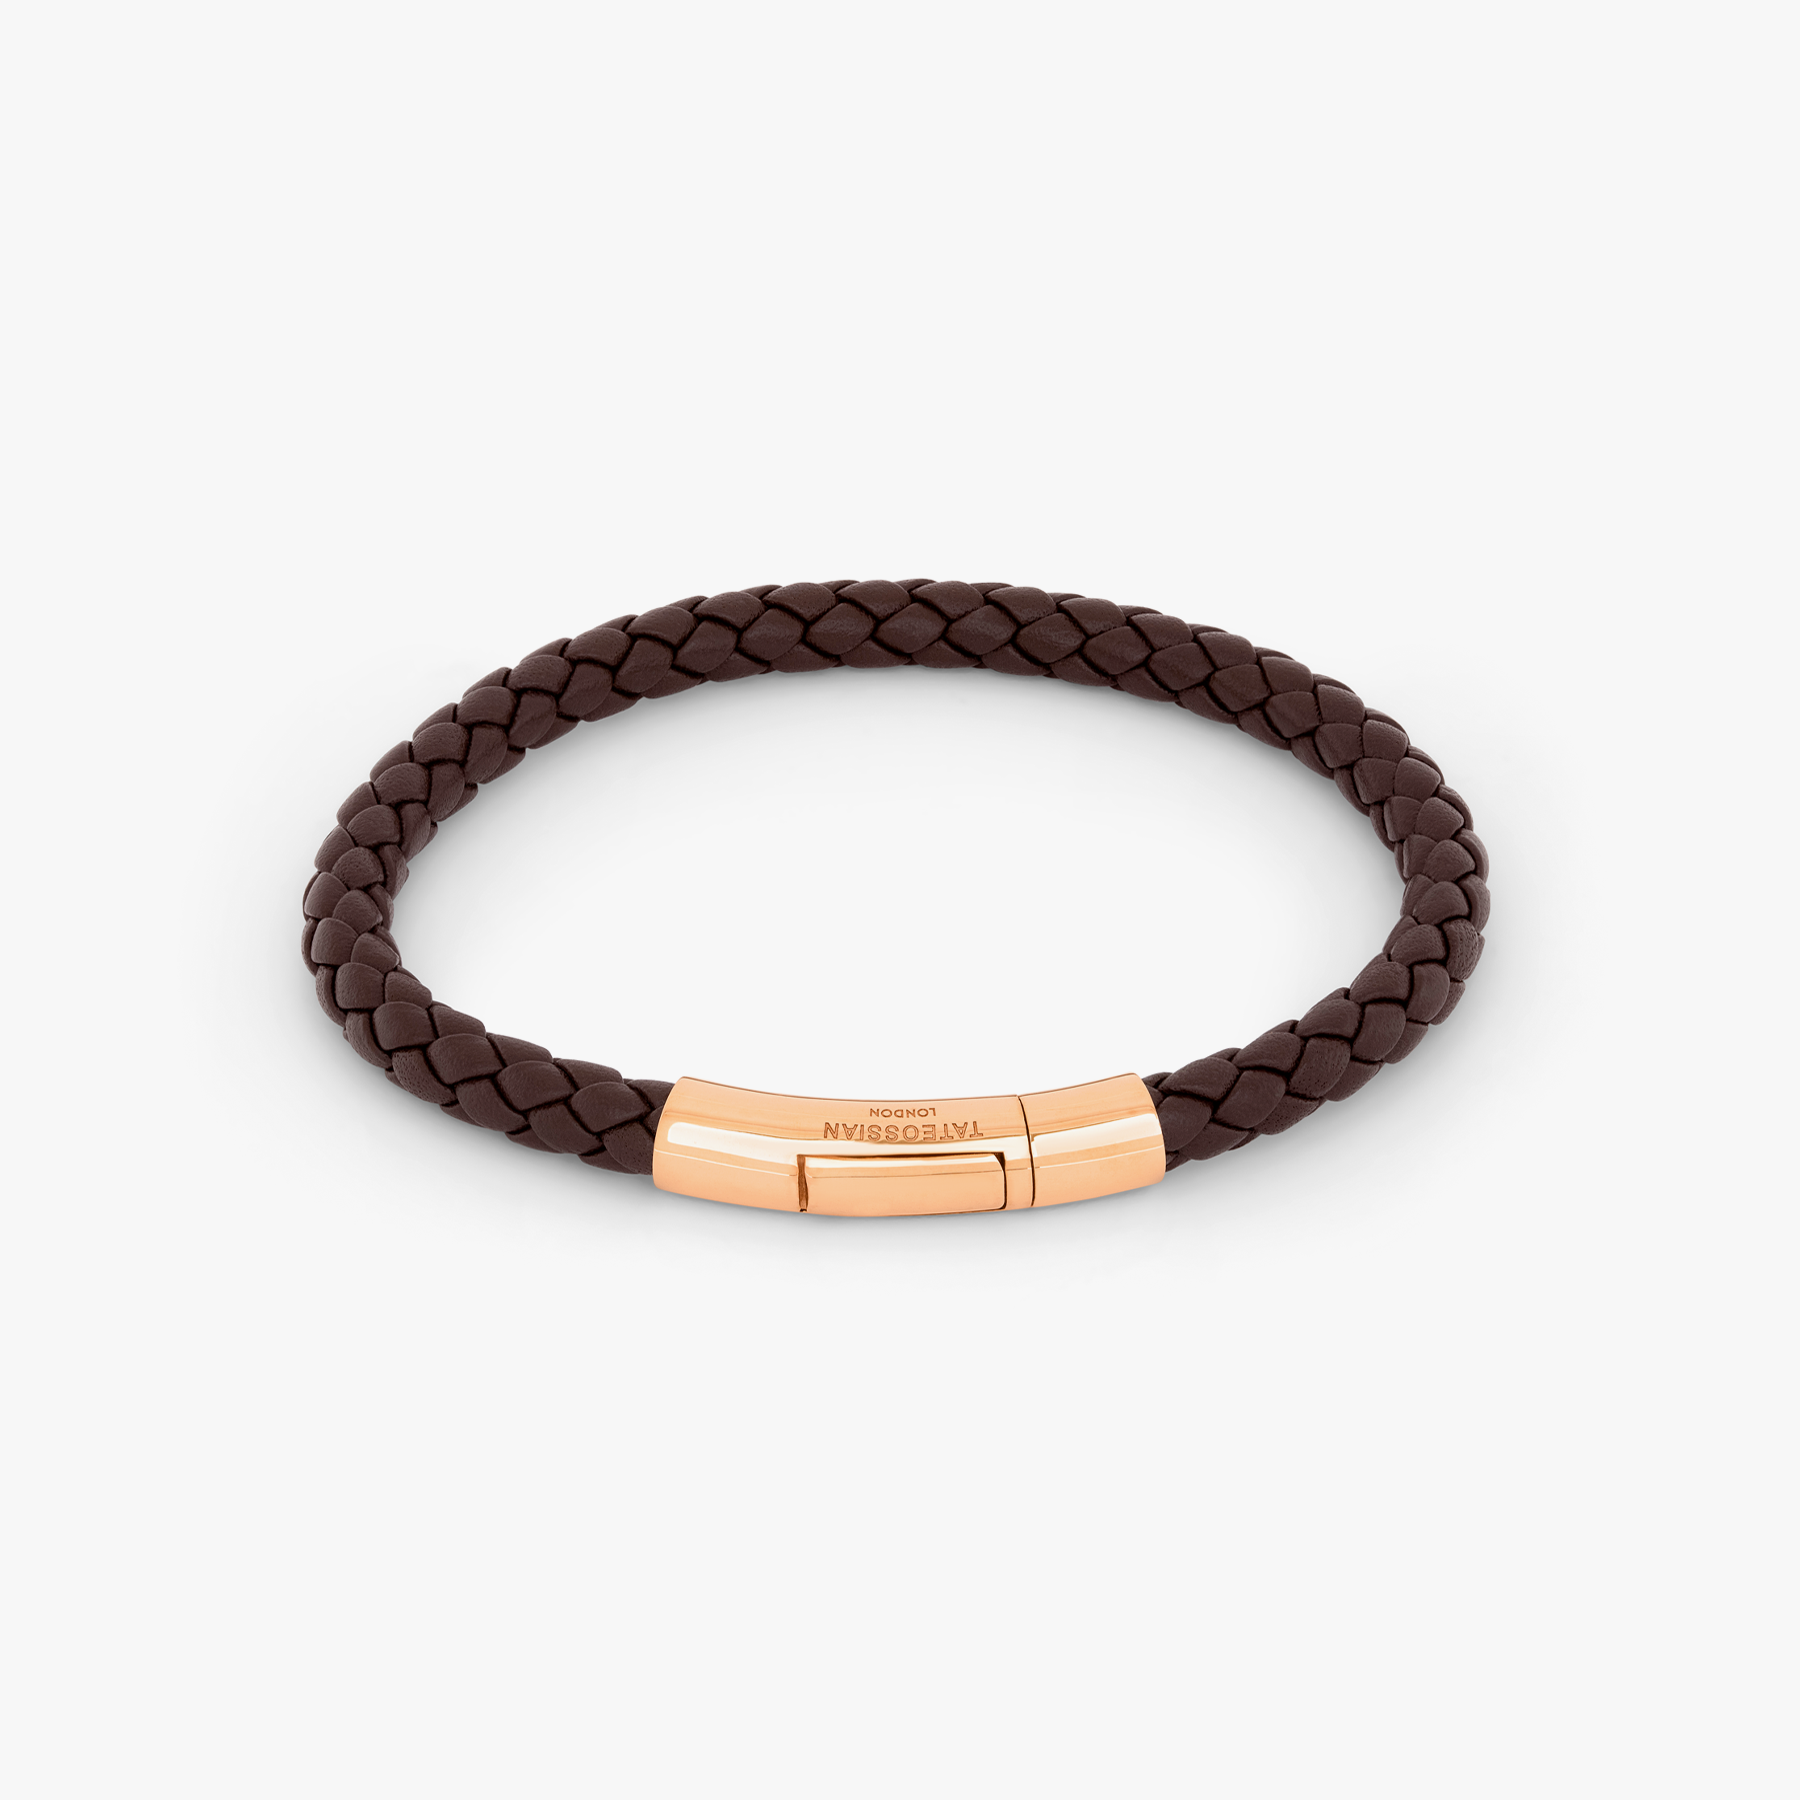 Brown Leather Bracelet With Hook Closure, N'Damus London